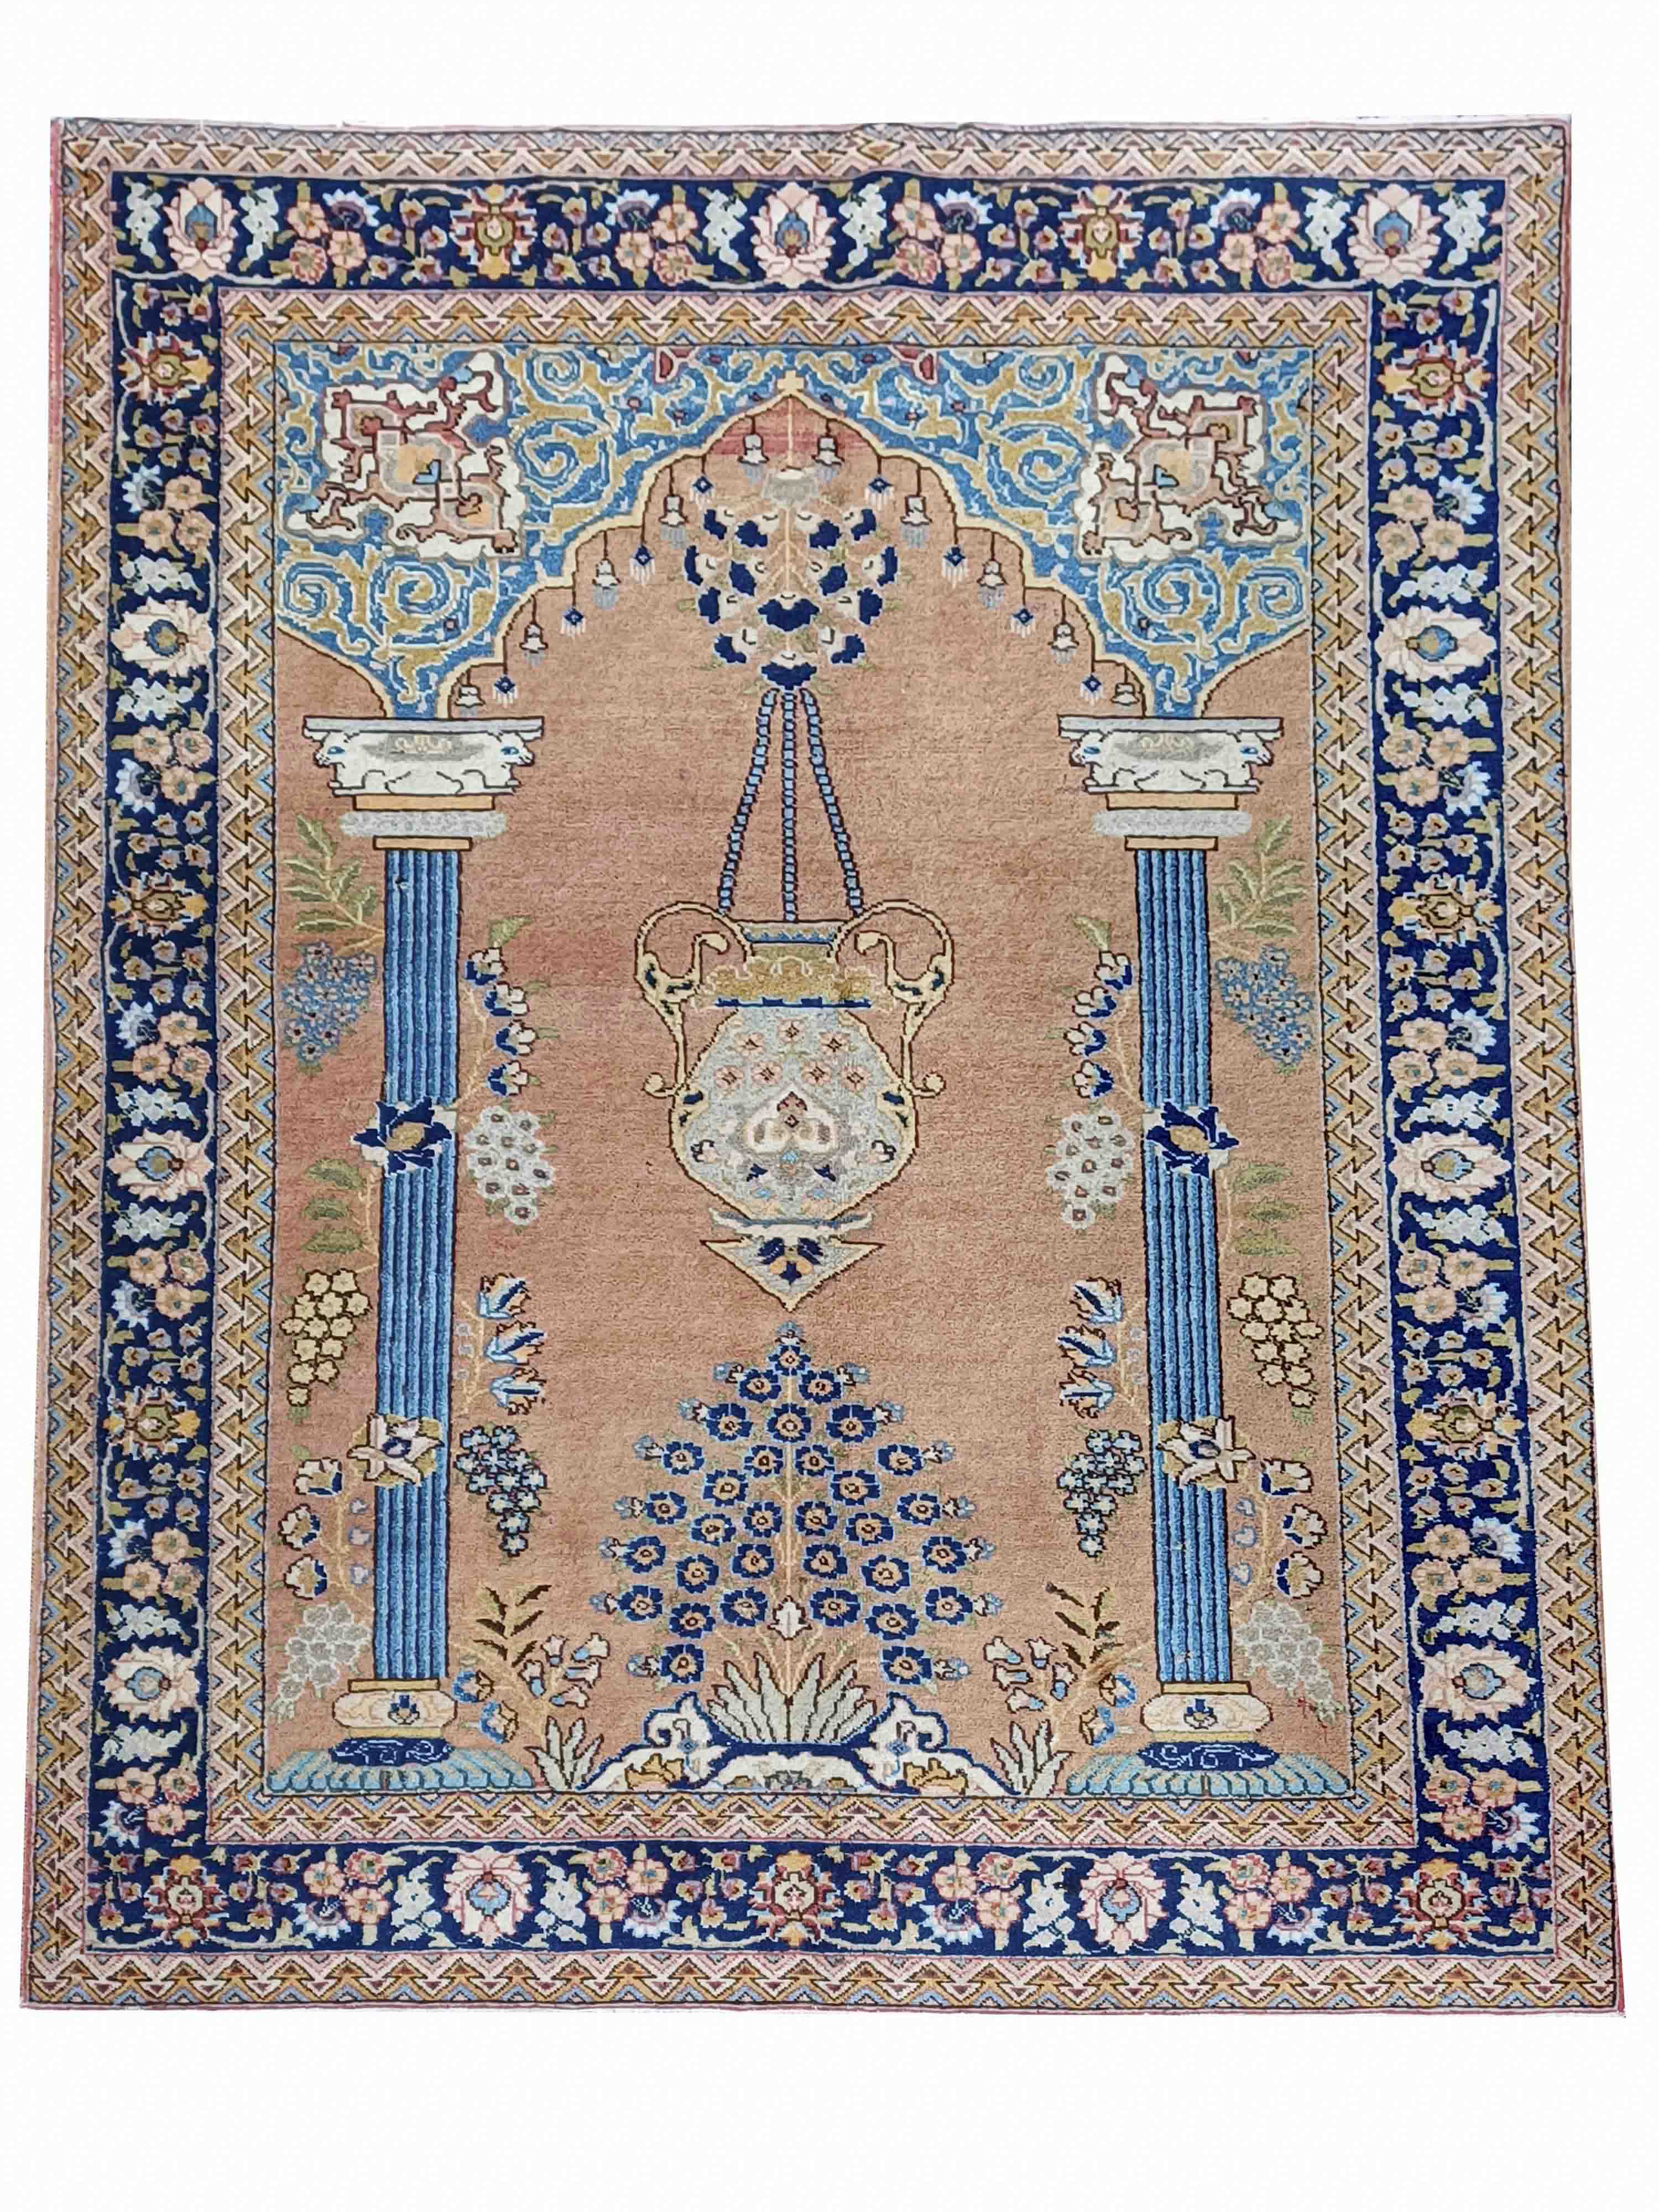 Carpet, 190 x 135 cm